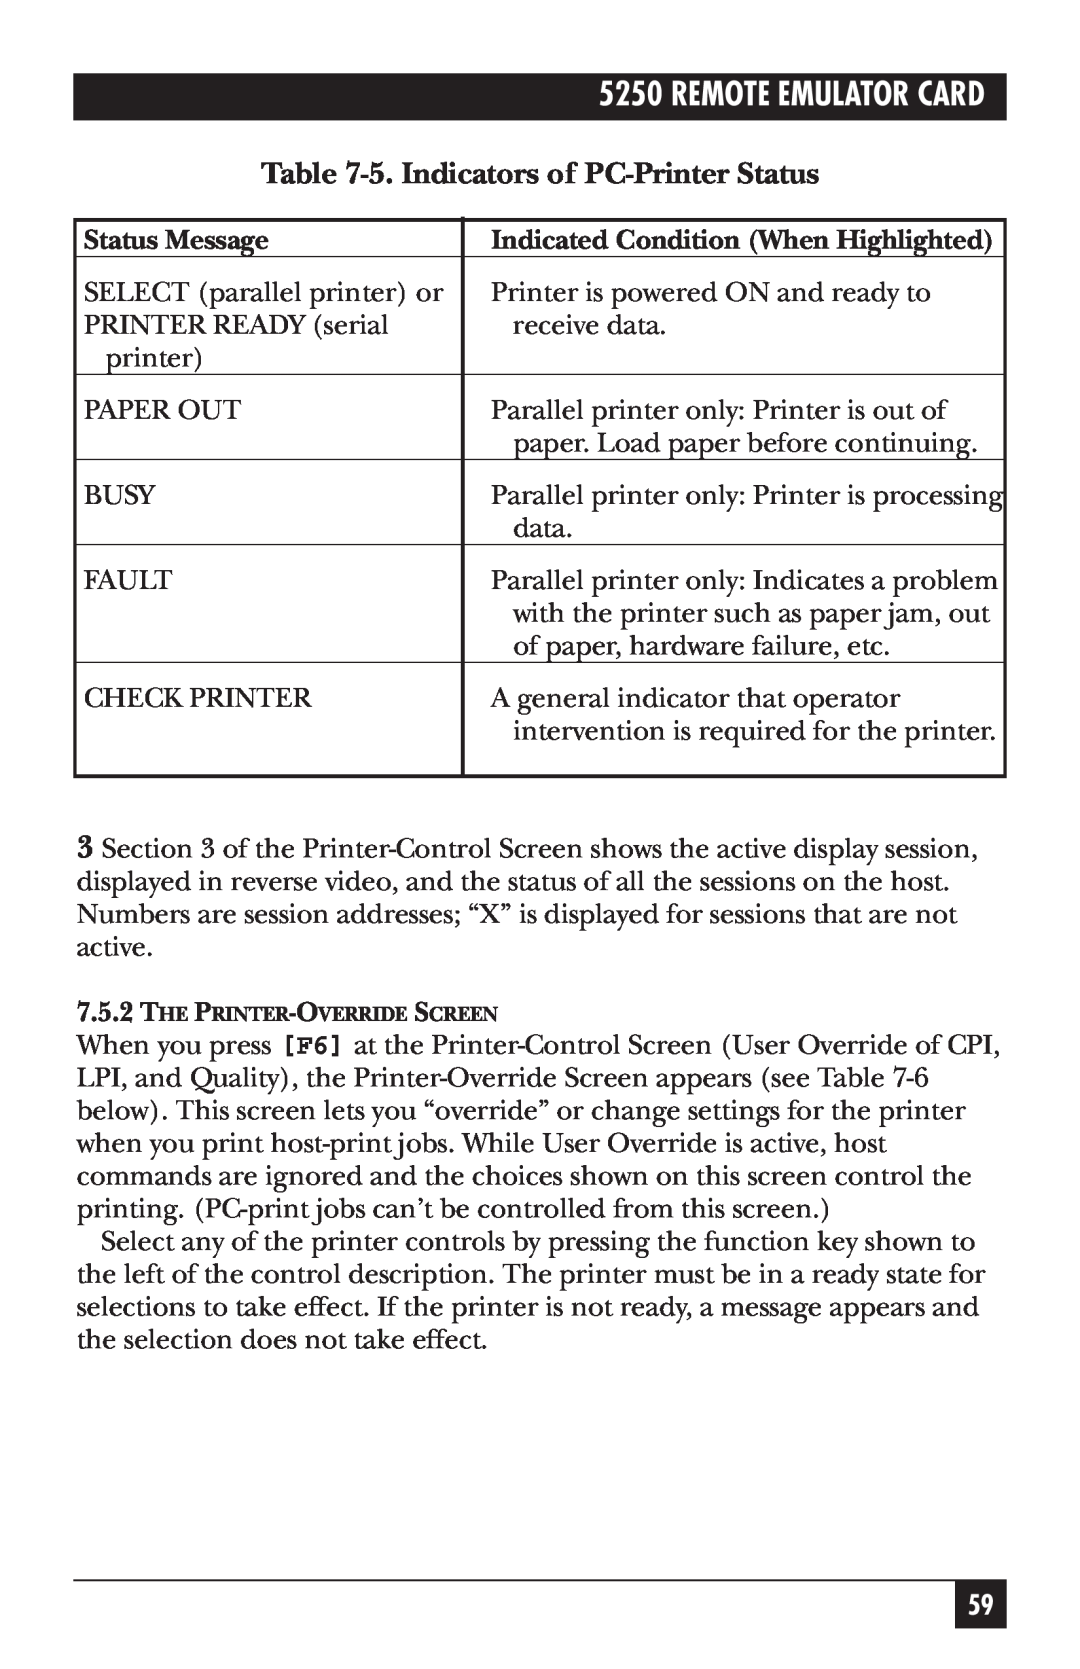 Black Box Remote Emulator Card, 5250 manual 5.Indicators of PC-PrinterStatus 